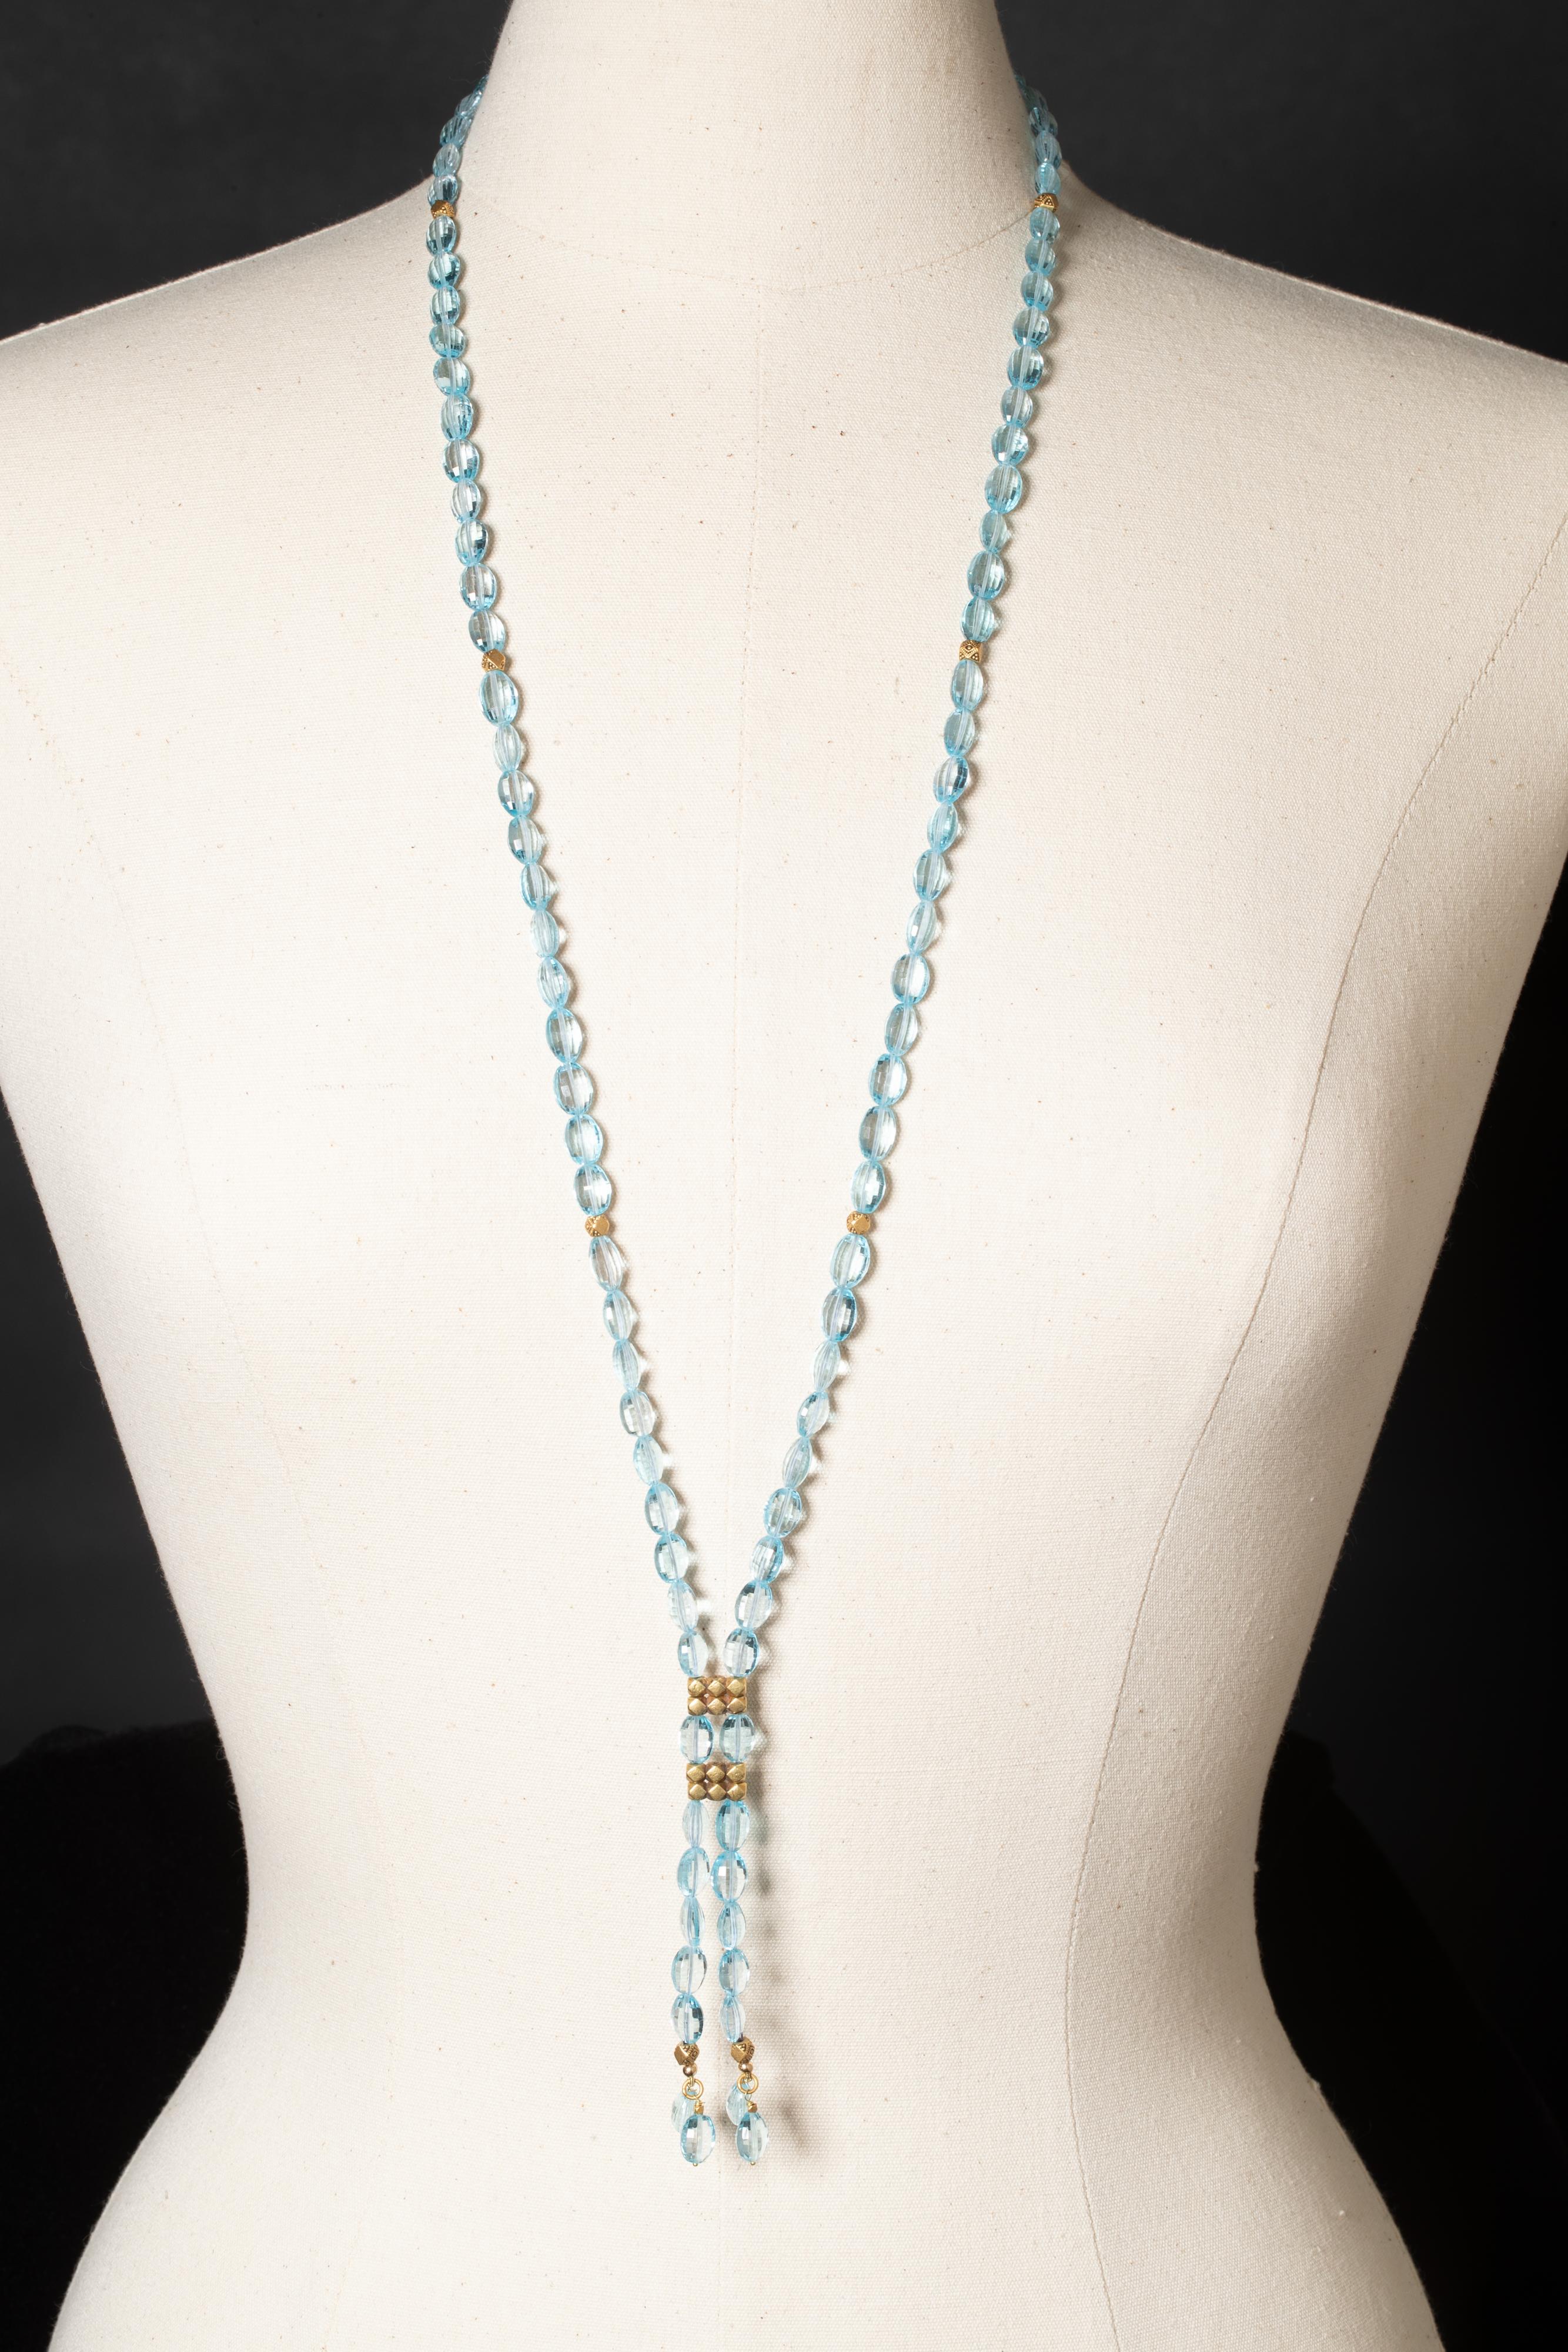 Diese vielseitige Halskette kann lang oder kurz getragen werden. Sie besteht aus facettierten blauen, ovalen Aquamarinperlen und 22-karätigen Goldperlen mit feiner Granulierung.  Lang getragen ist es 42